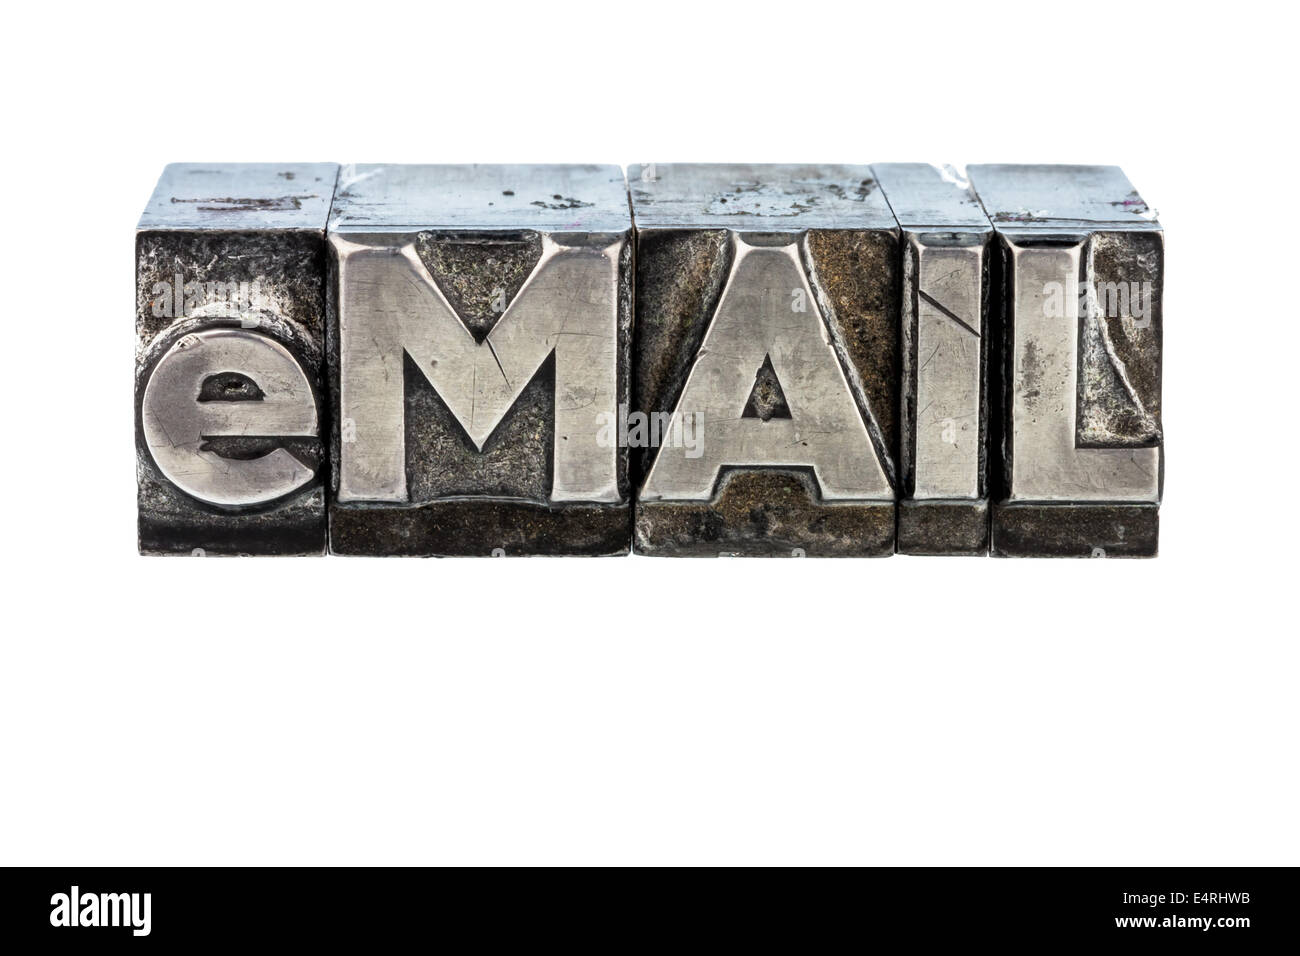 "La parola ''e-mail'' in lettere di piombo scritto. foto simbolico per corrispondenza rapida', das Wort ' e-mail ' in Bleibuchstaben Foto Stock